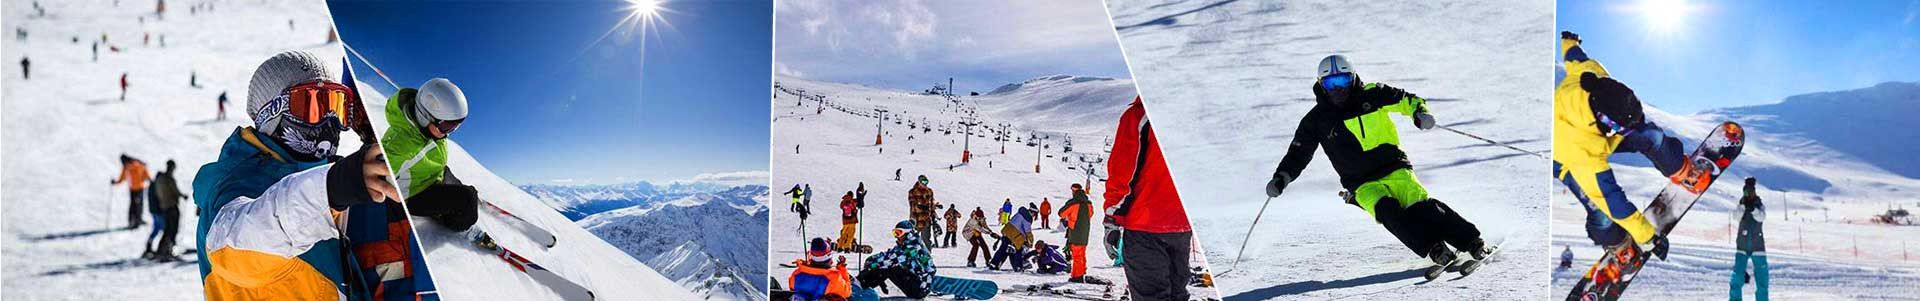 بهترین خرید پیست اسکی توچال تهران با بیشترین درصد تخفیف در قیمت - جدید